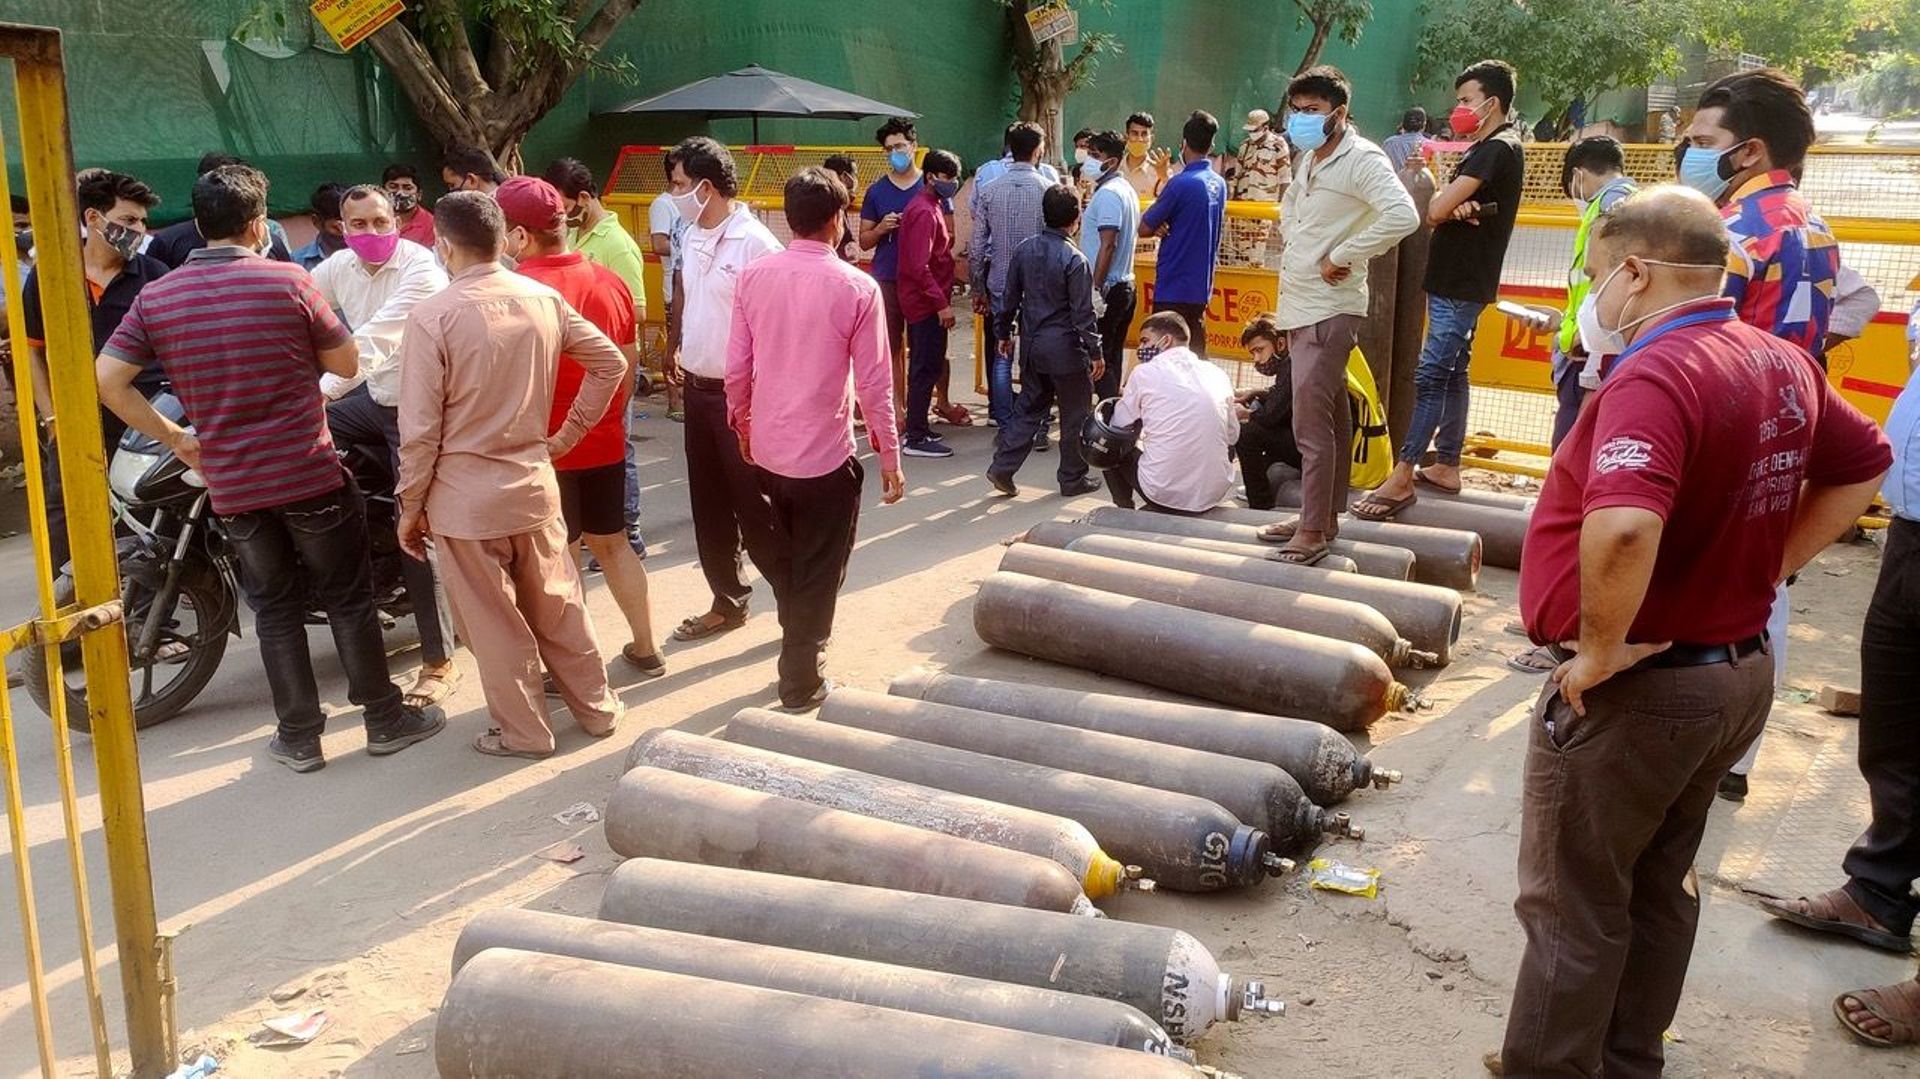 Devant l’usine Vaibhav, au sud-est de New Delhi, la police a restreint l’accès à l’usine. Des dizaines de personnes attendent de pouvoir remplir leur bouteille d’oxygène
